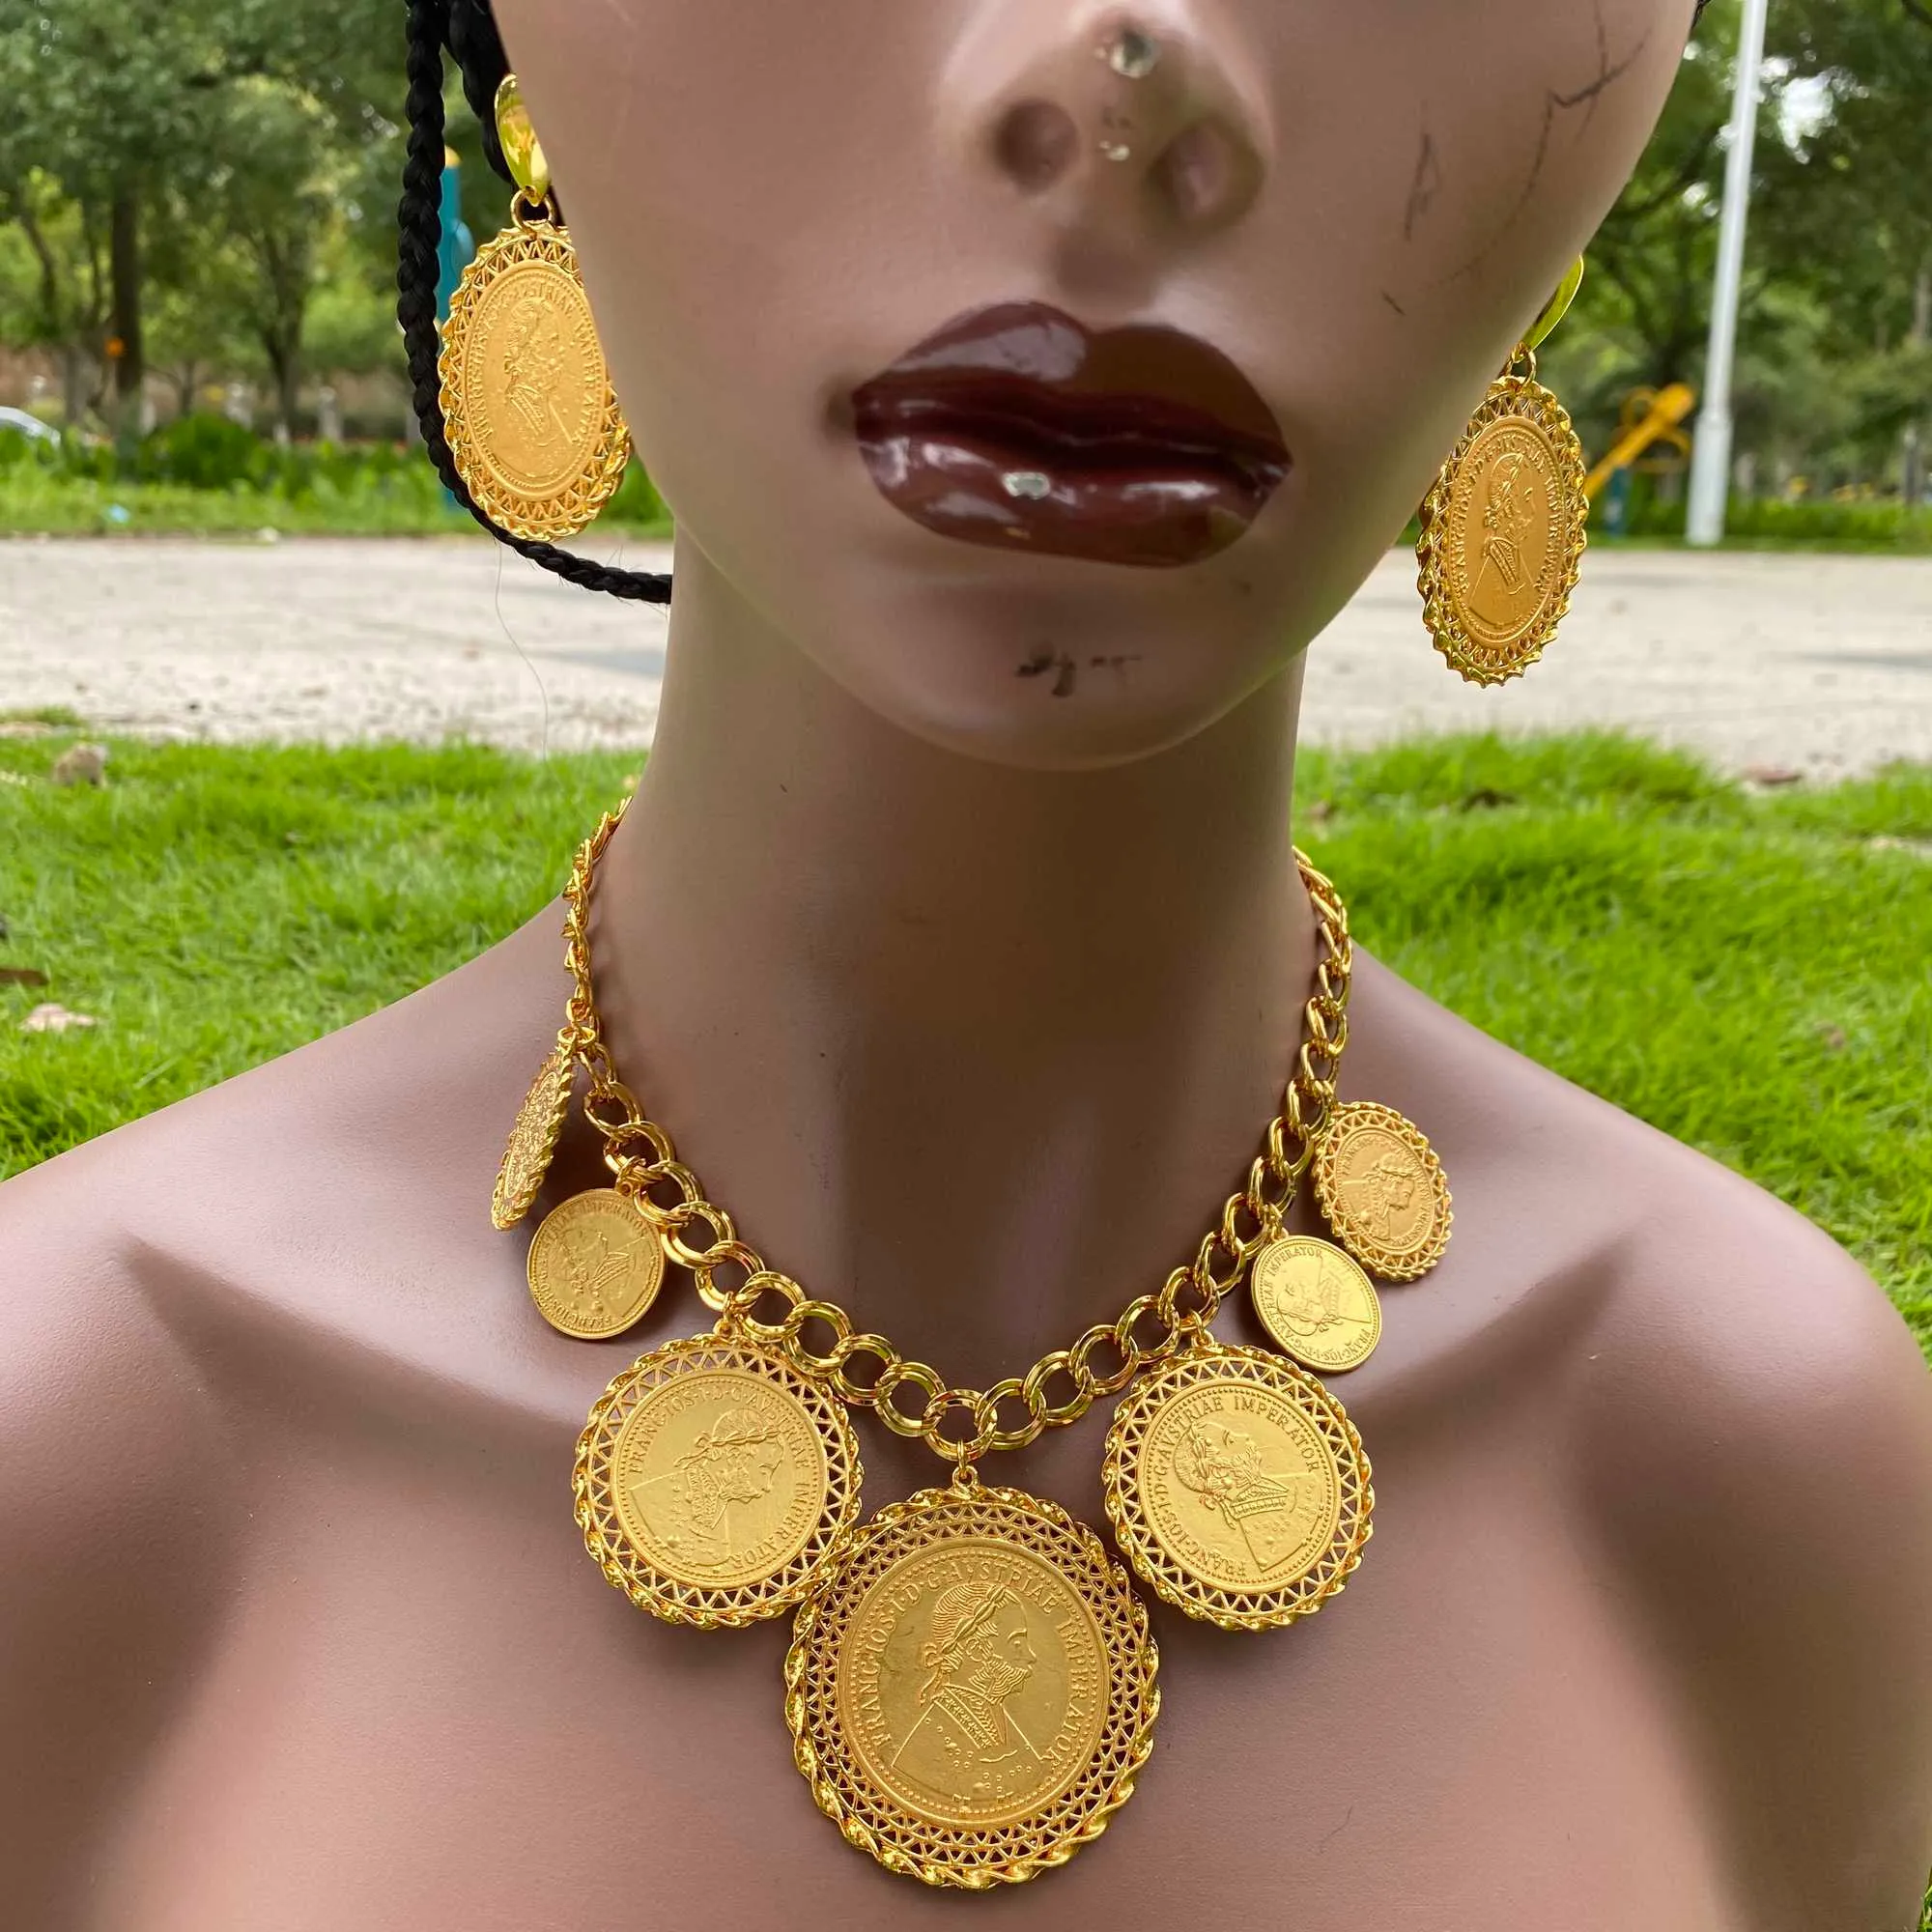 Mynt halsbandringsbruten smyckesuppsättningar för kvinnor guldfärg mynt arabiskafrikanska brud kalkon bröllopspresent 2107207882231